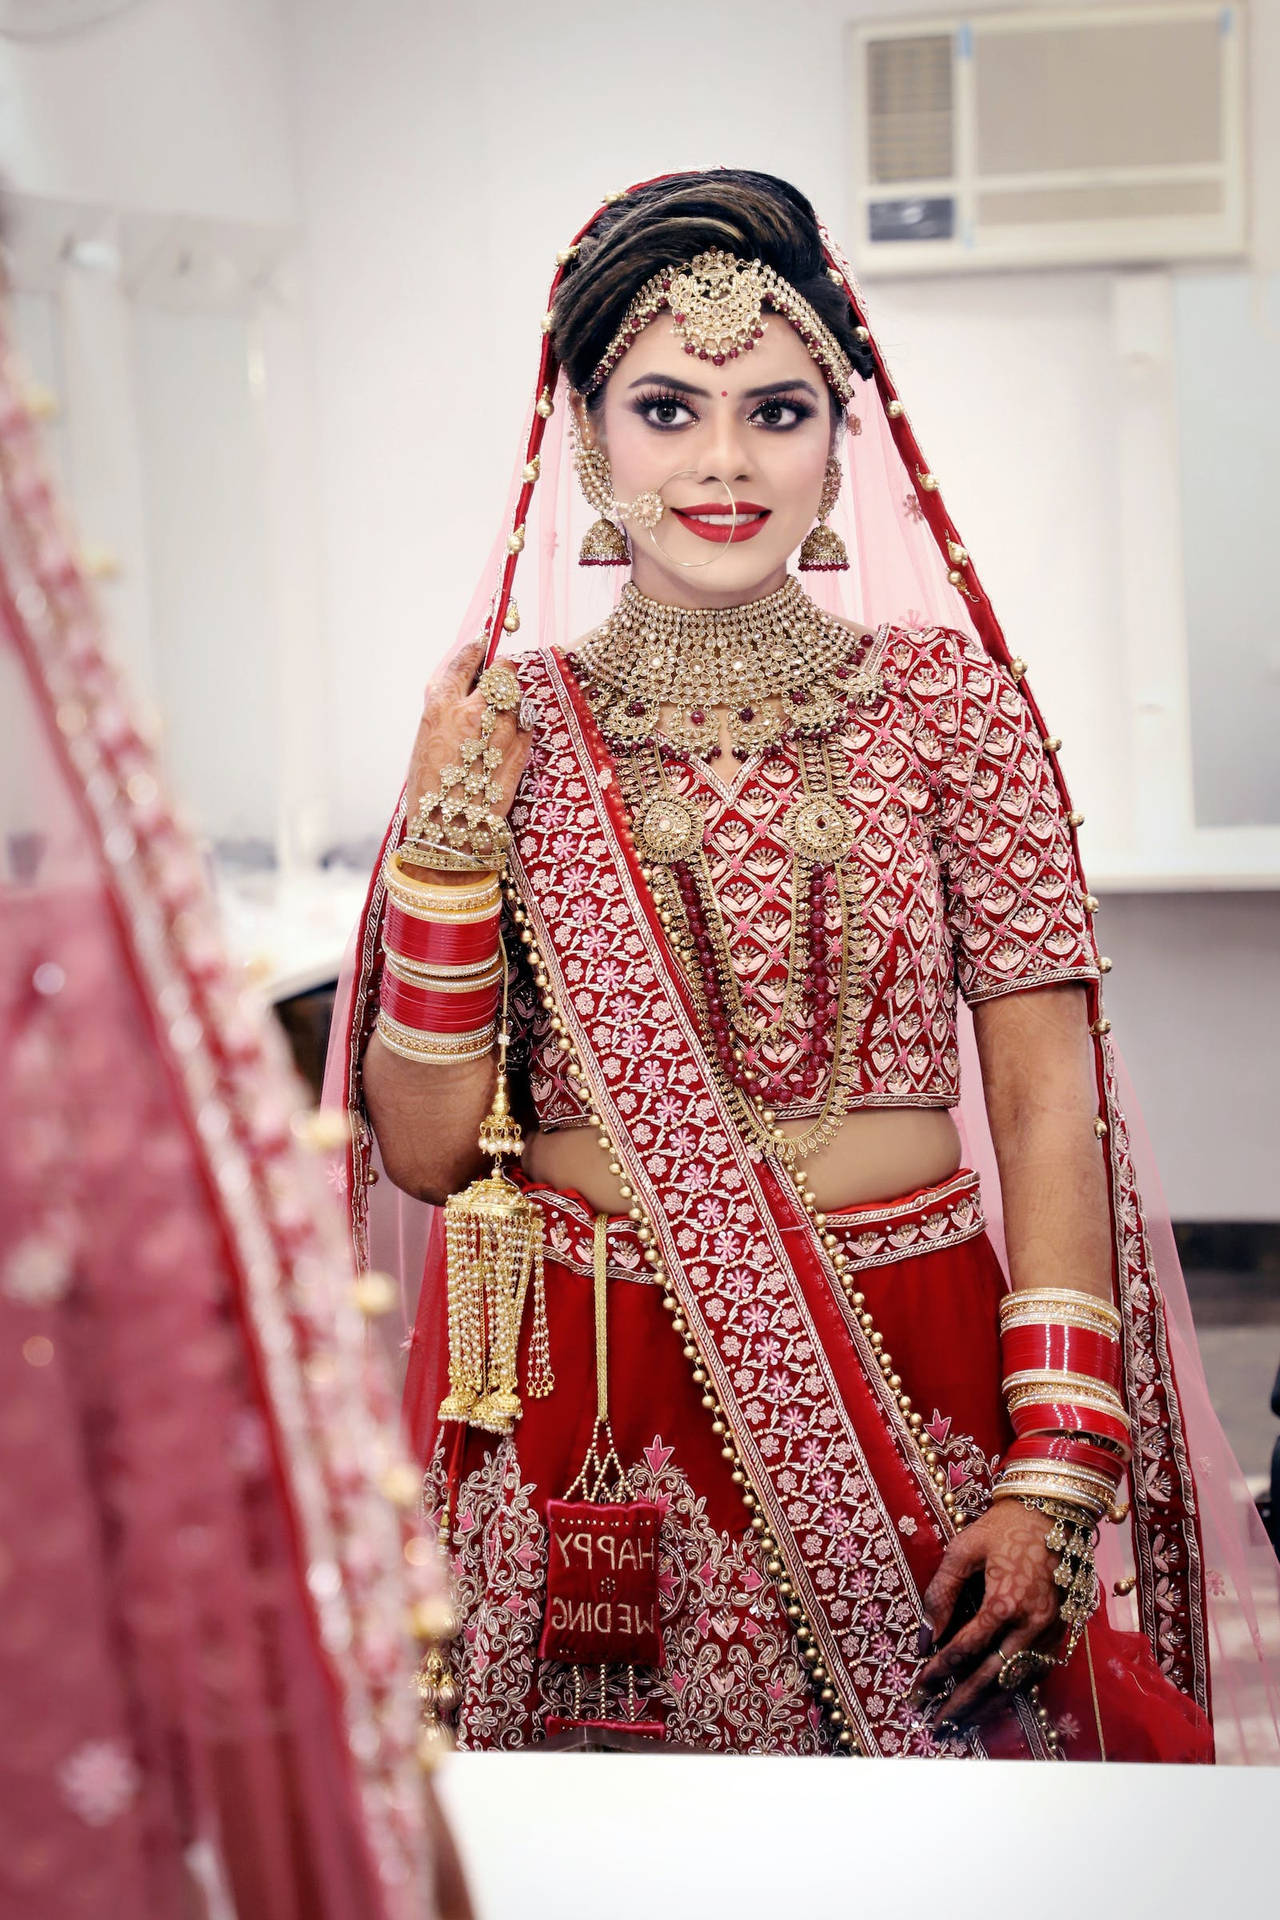 Woman Sari Dress Indian Wedding